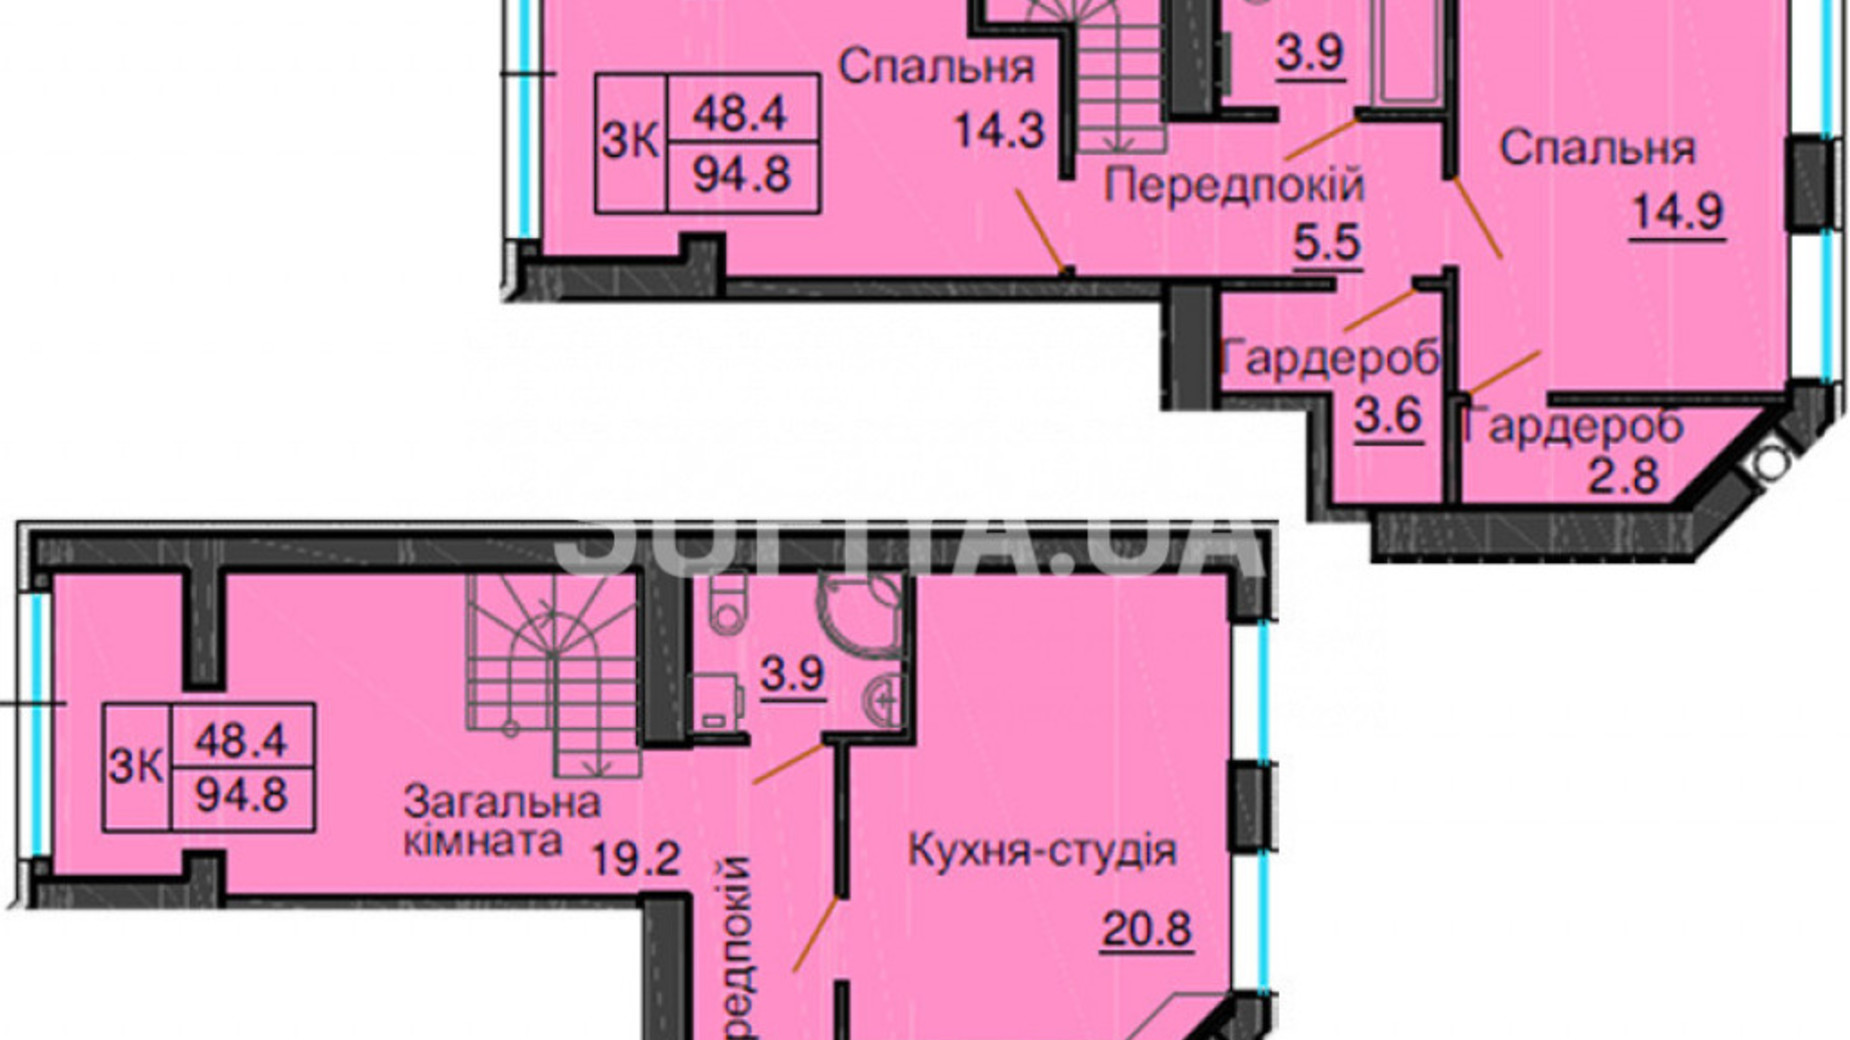 Планировка много­уровневой квартиры в ЖК Sofia Nova 94.8 м², фото 360095